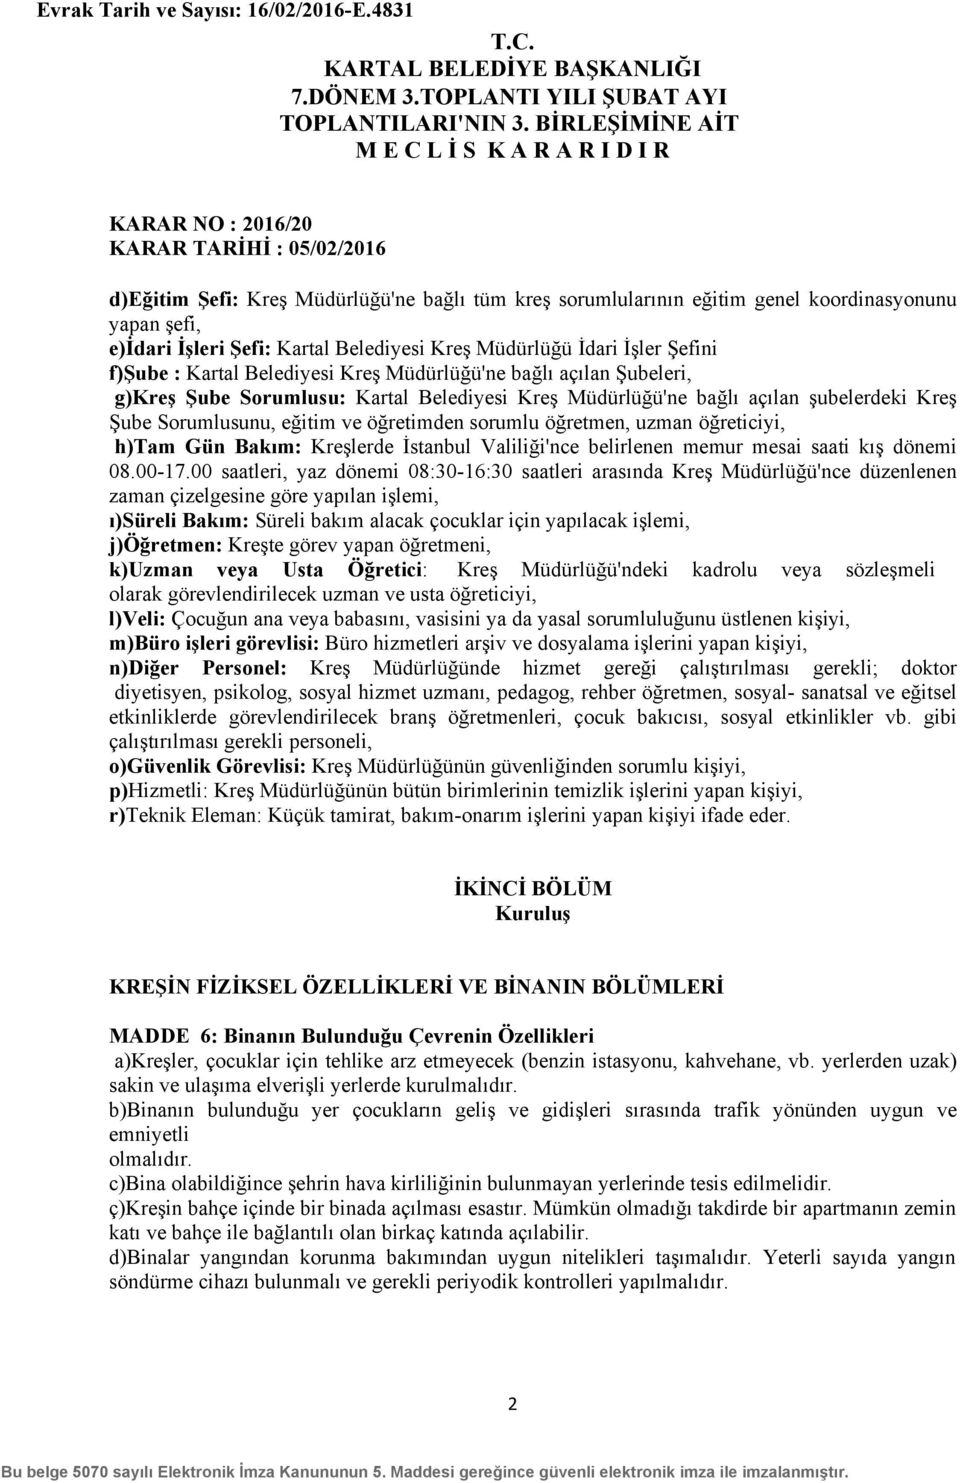 uzman öğreticiyi, h)tam Gün Bakım: Kreşlerde İstanbul Valiliği'nce belirlenen memur mesai saati kış dönemi 08.00-17.